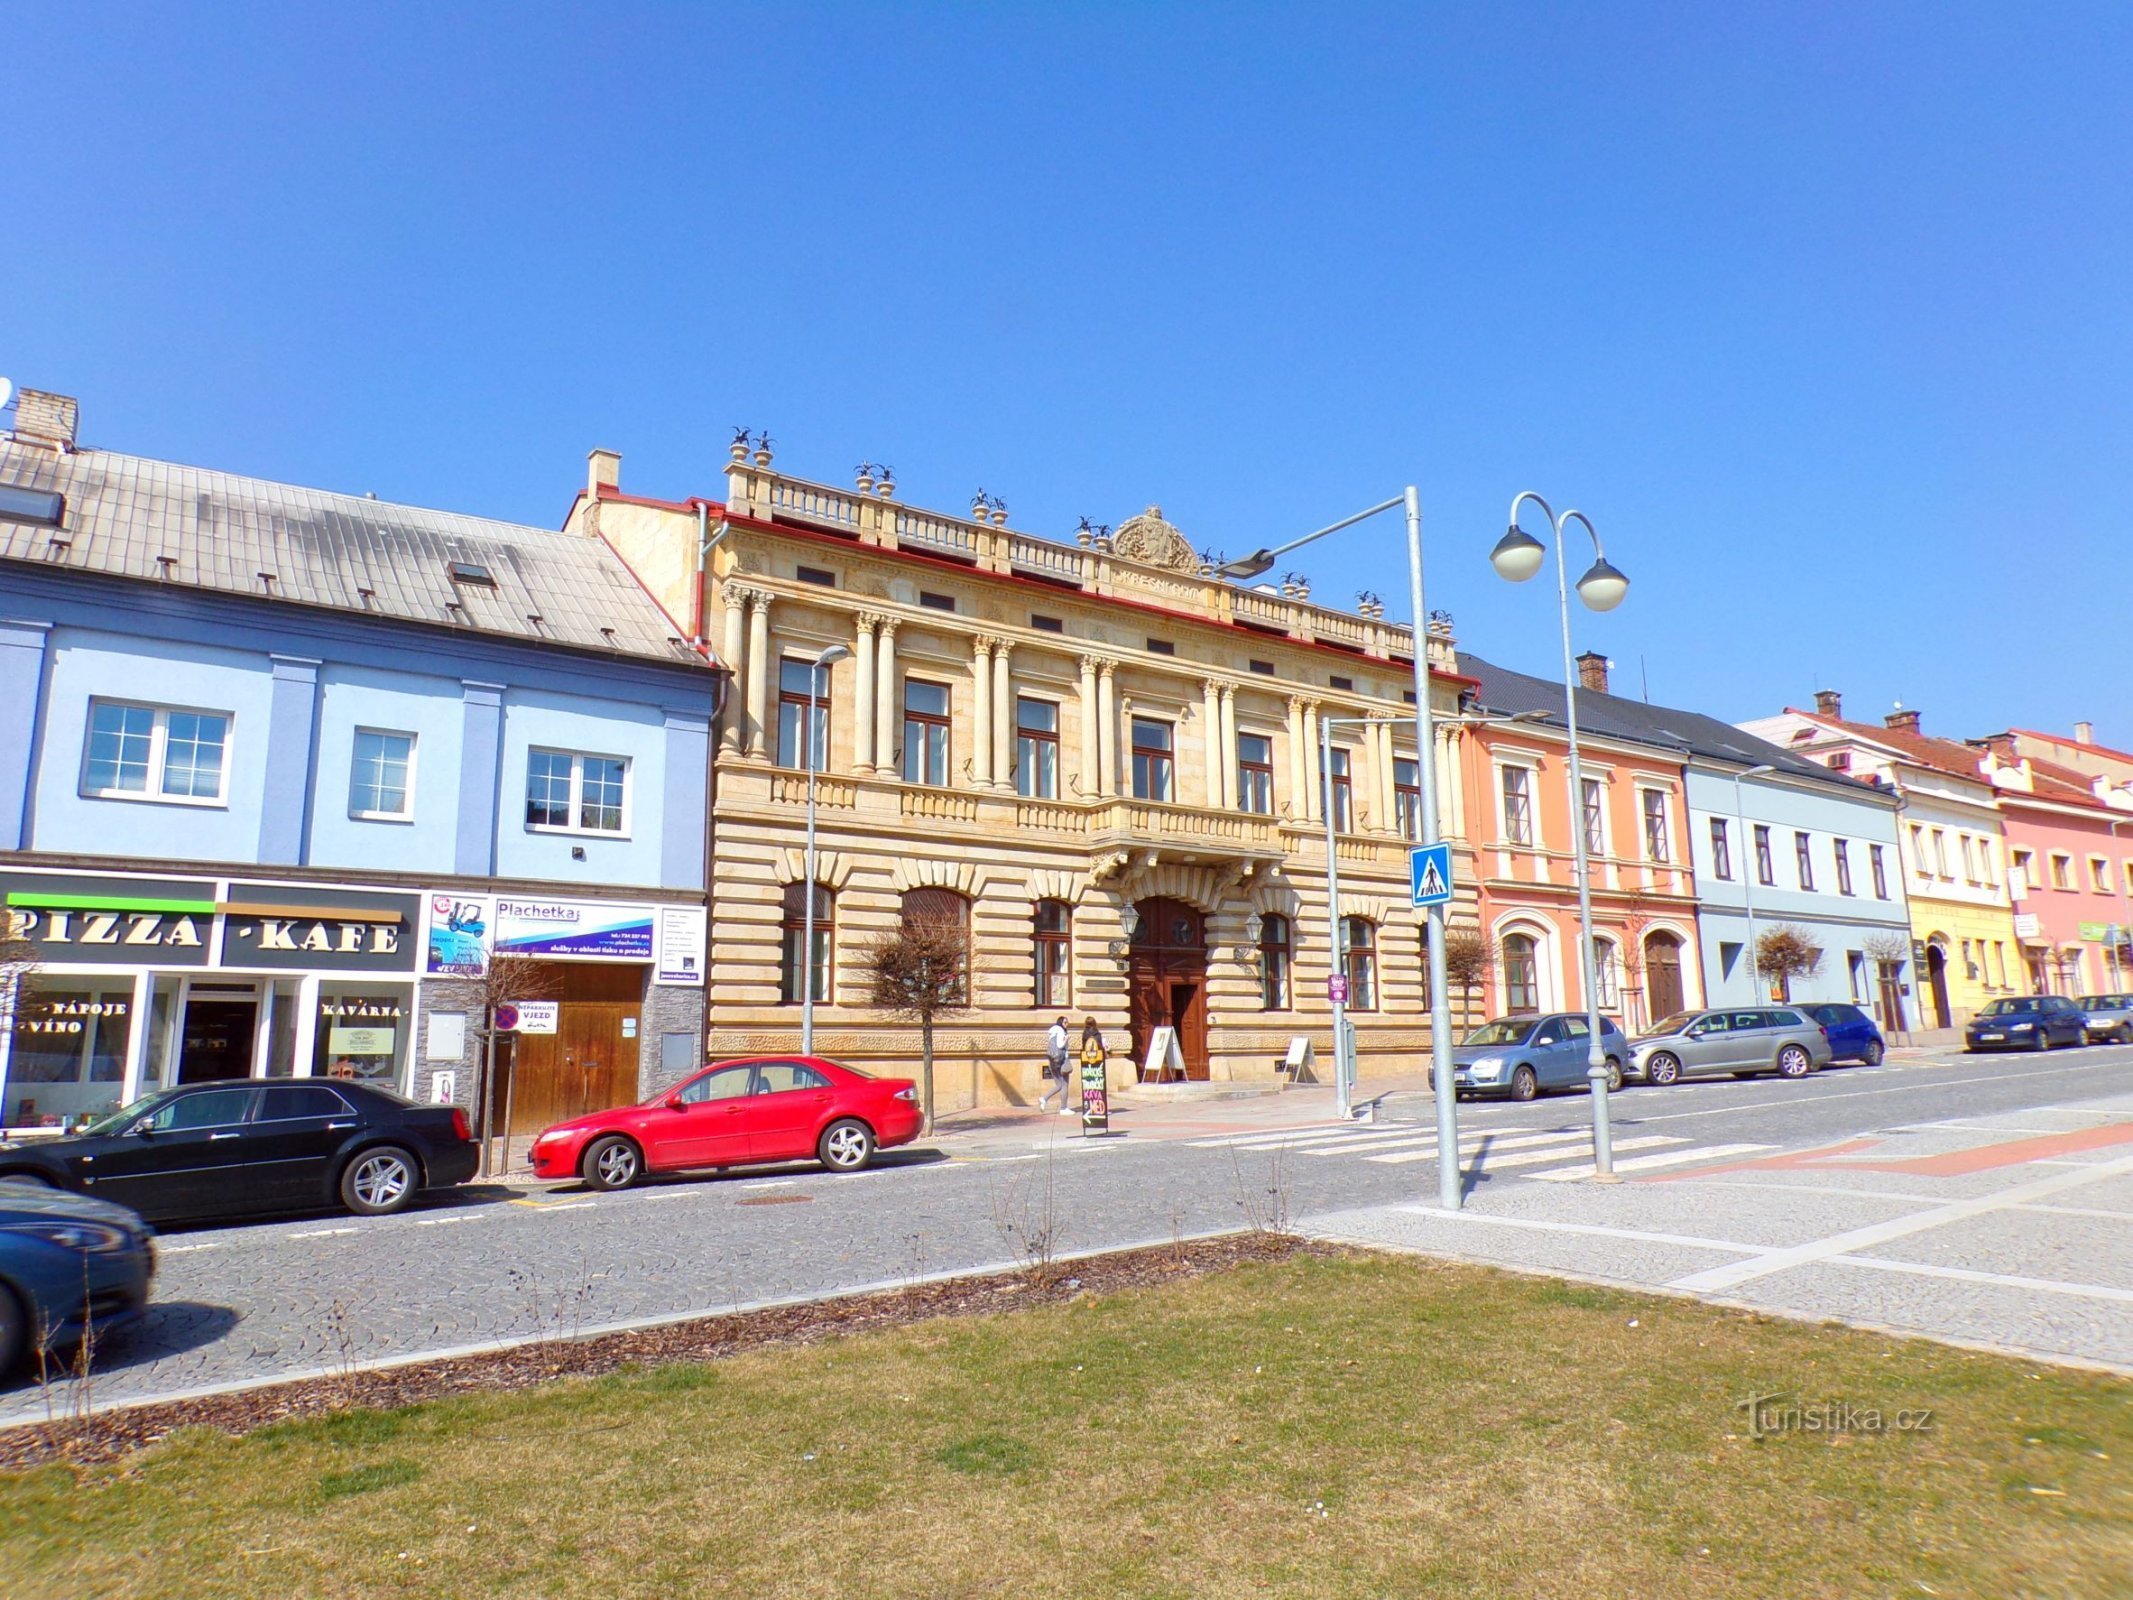 Casa districtuală (Hořice, 25.3.2022)